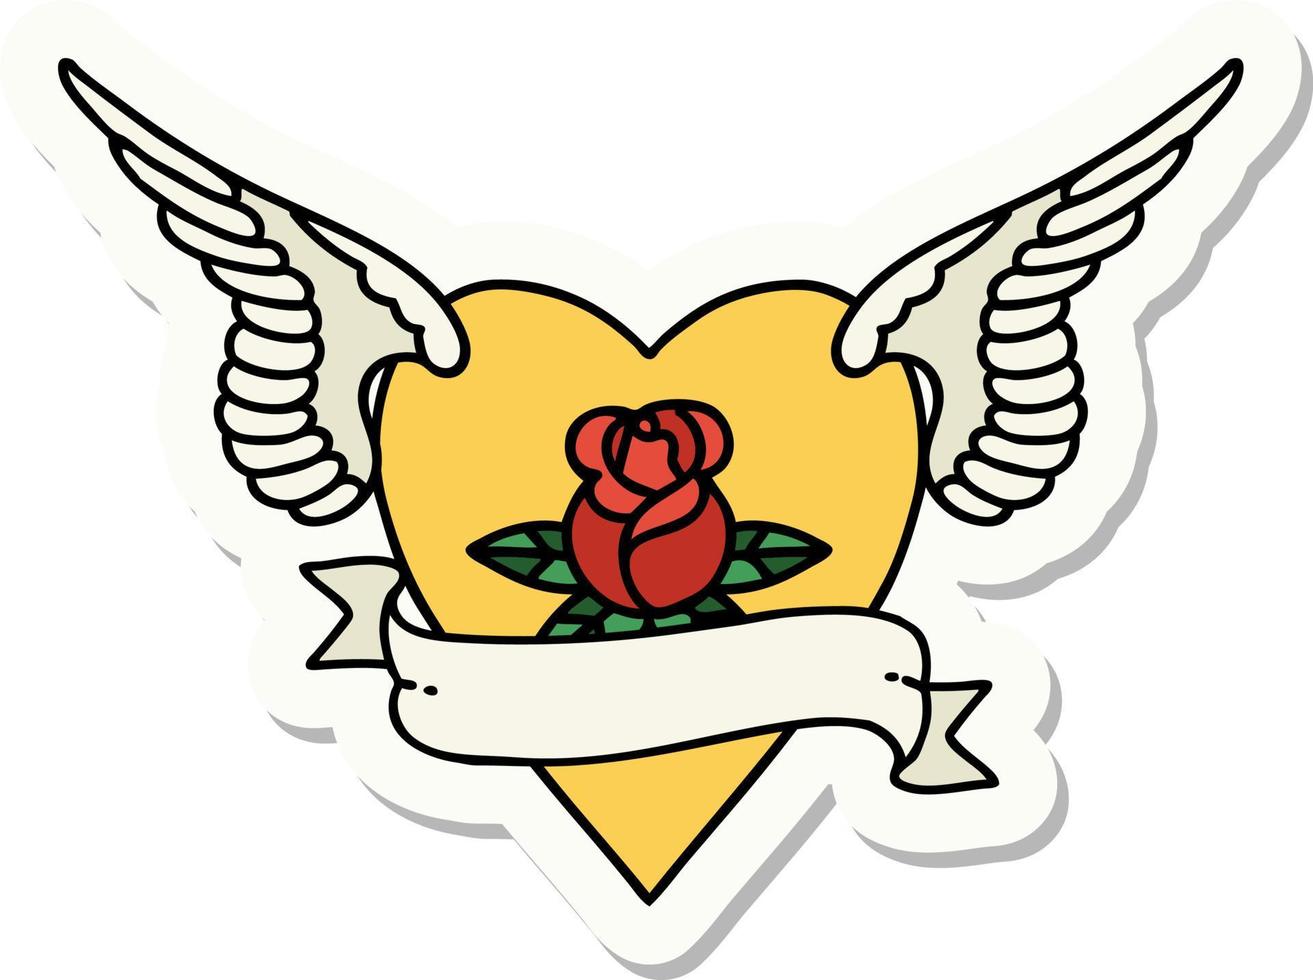 adesivo de tatuagem em estilo tradicional de coração com asas uma rosa e banner vetor